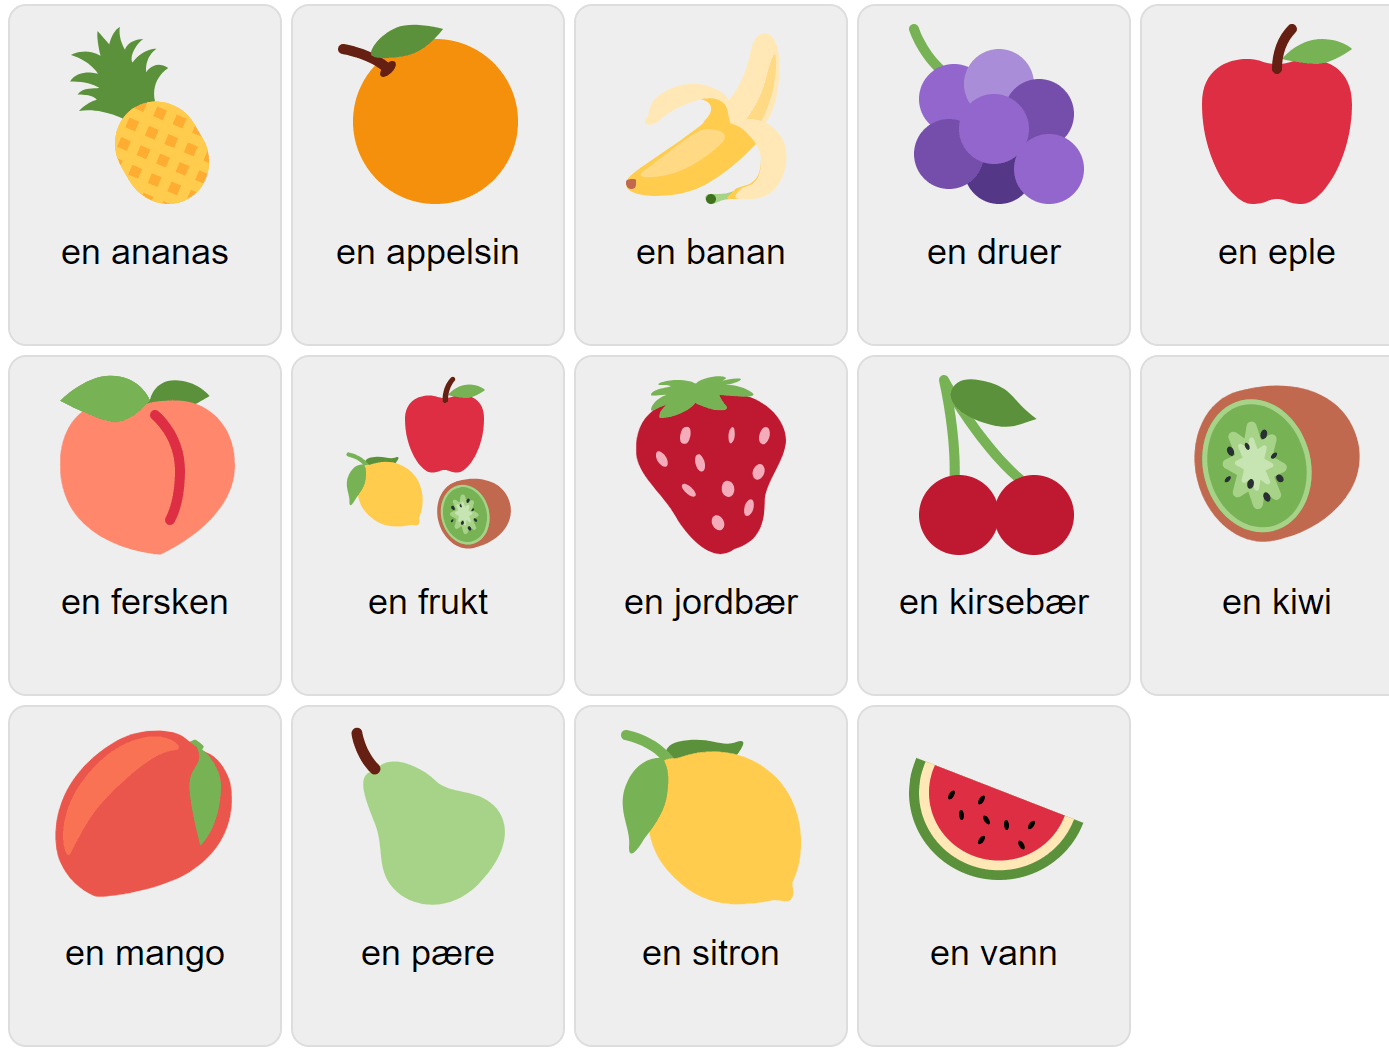 Fruits in Norwegian